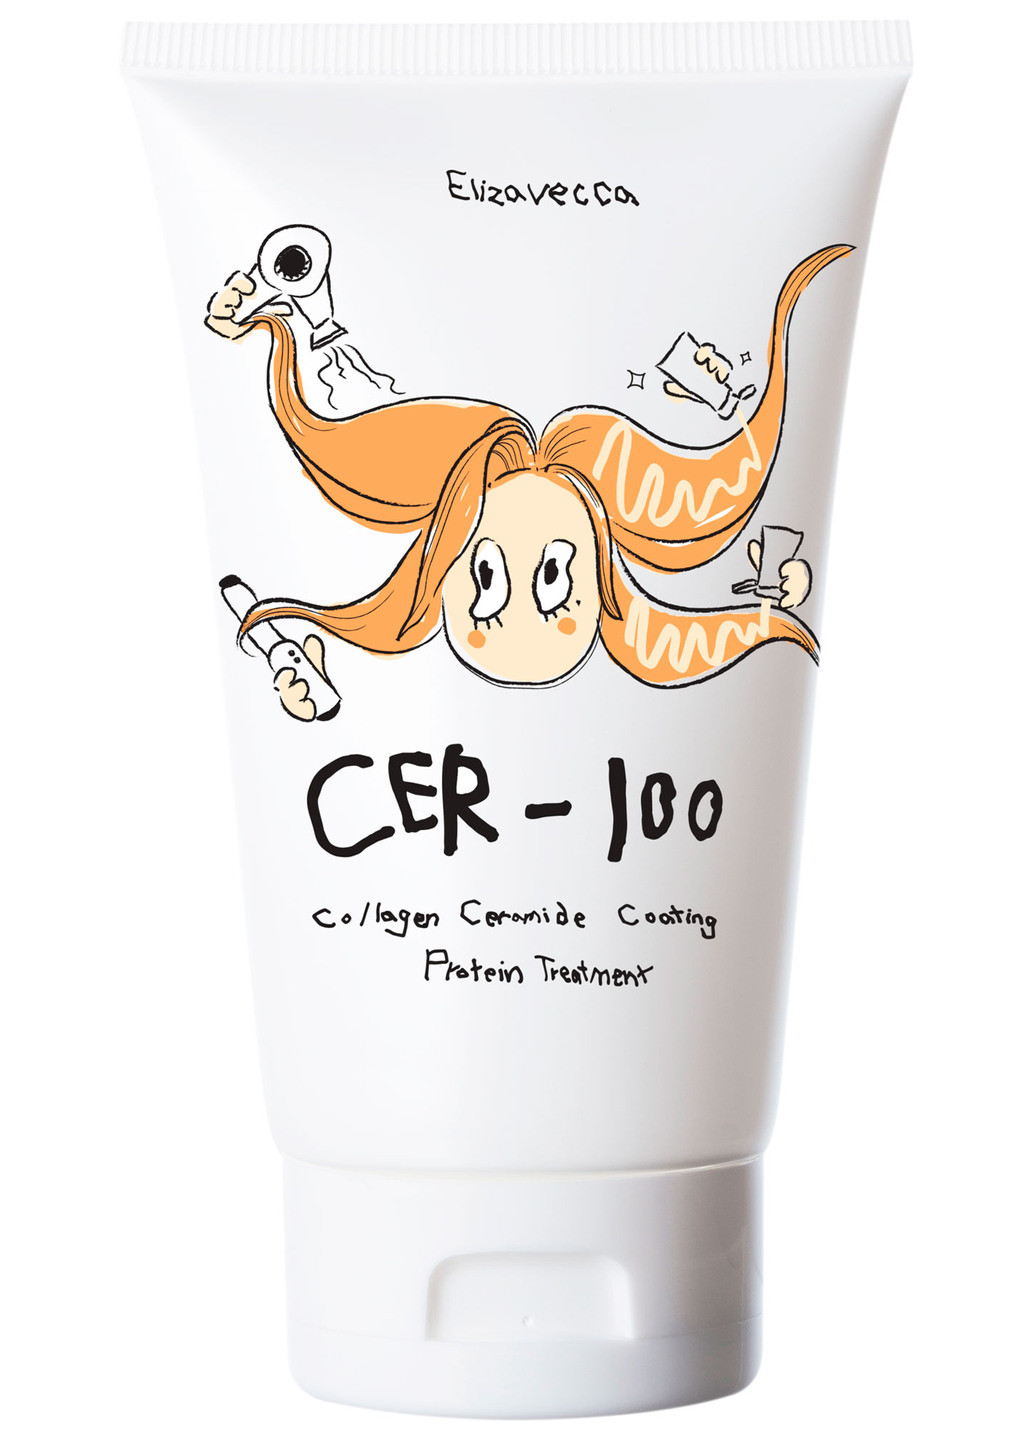 Восстанавливающая маска для волос Cer-100 Milky Piggy Collagen Ceramide Coating Protein T 100 мл Elizavecca (190303398)